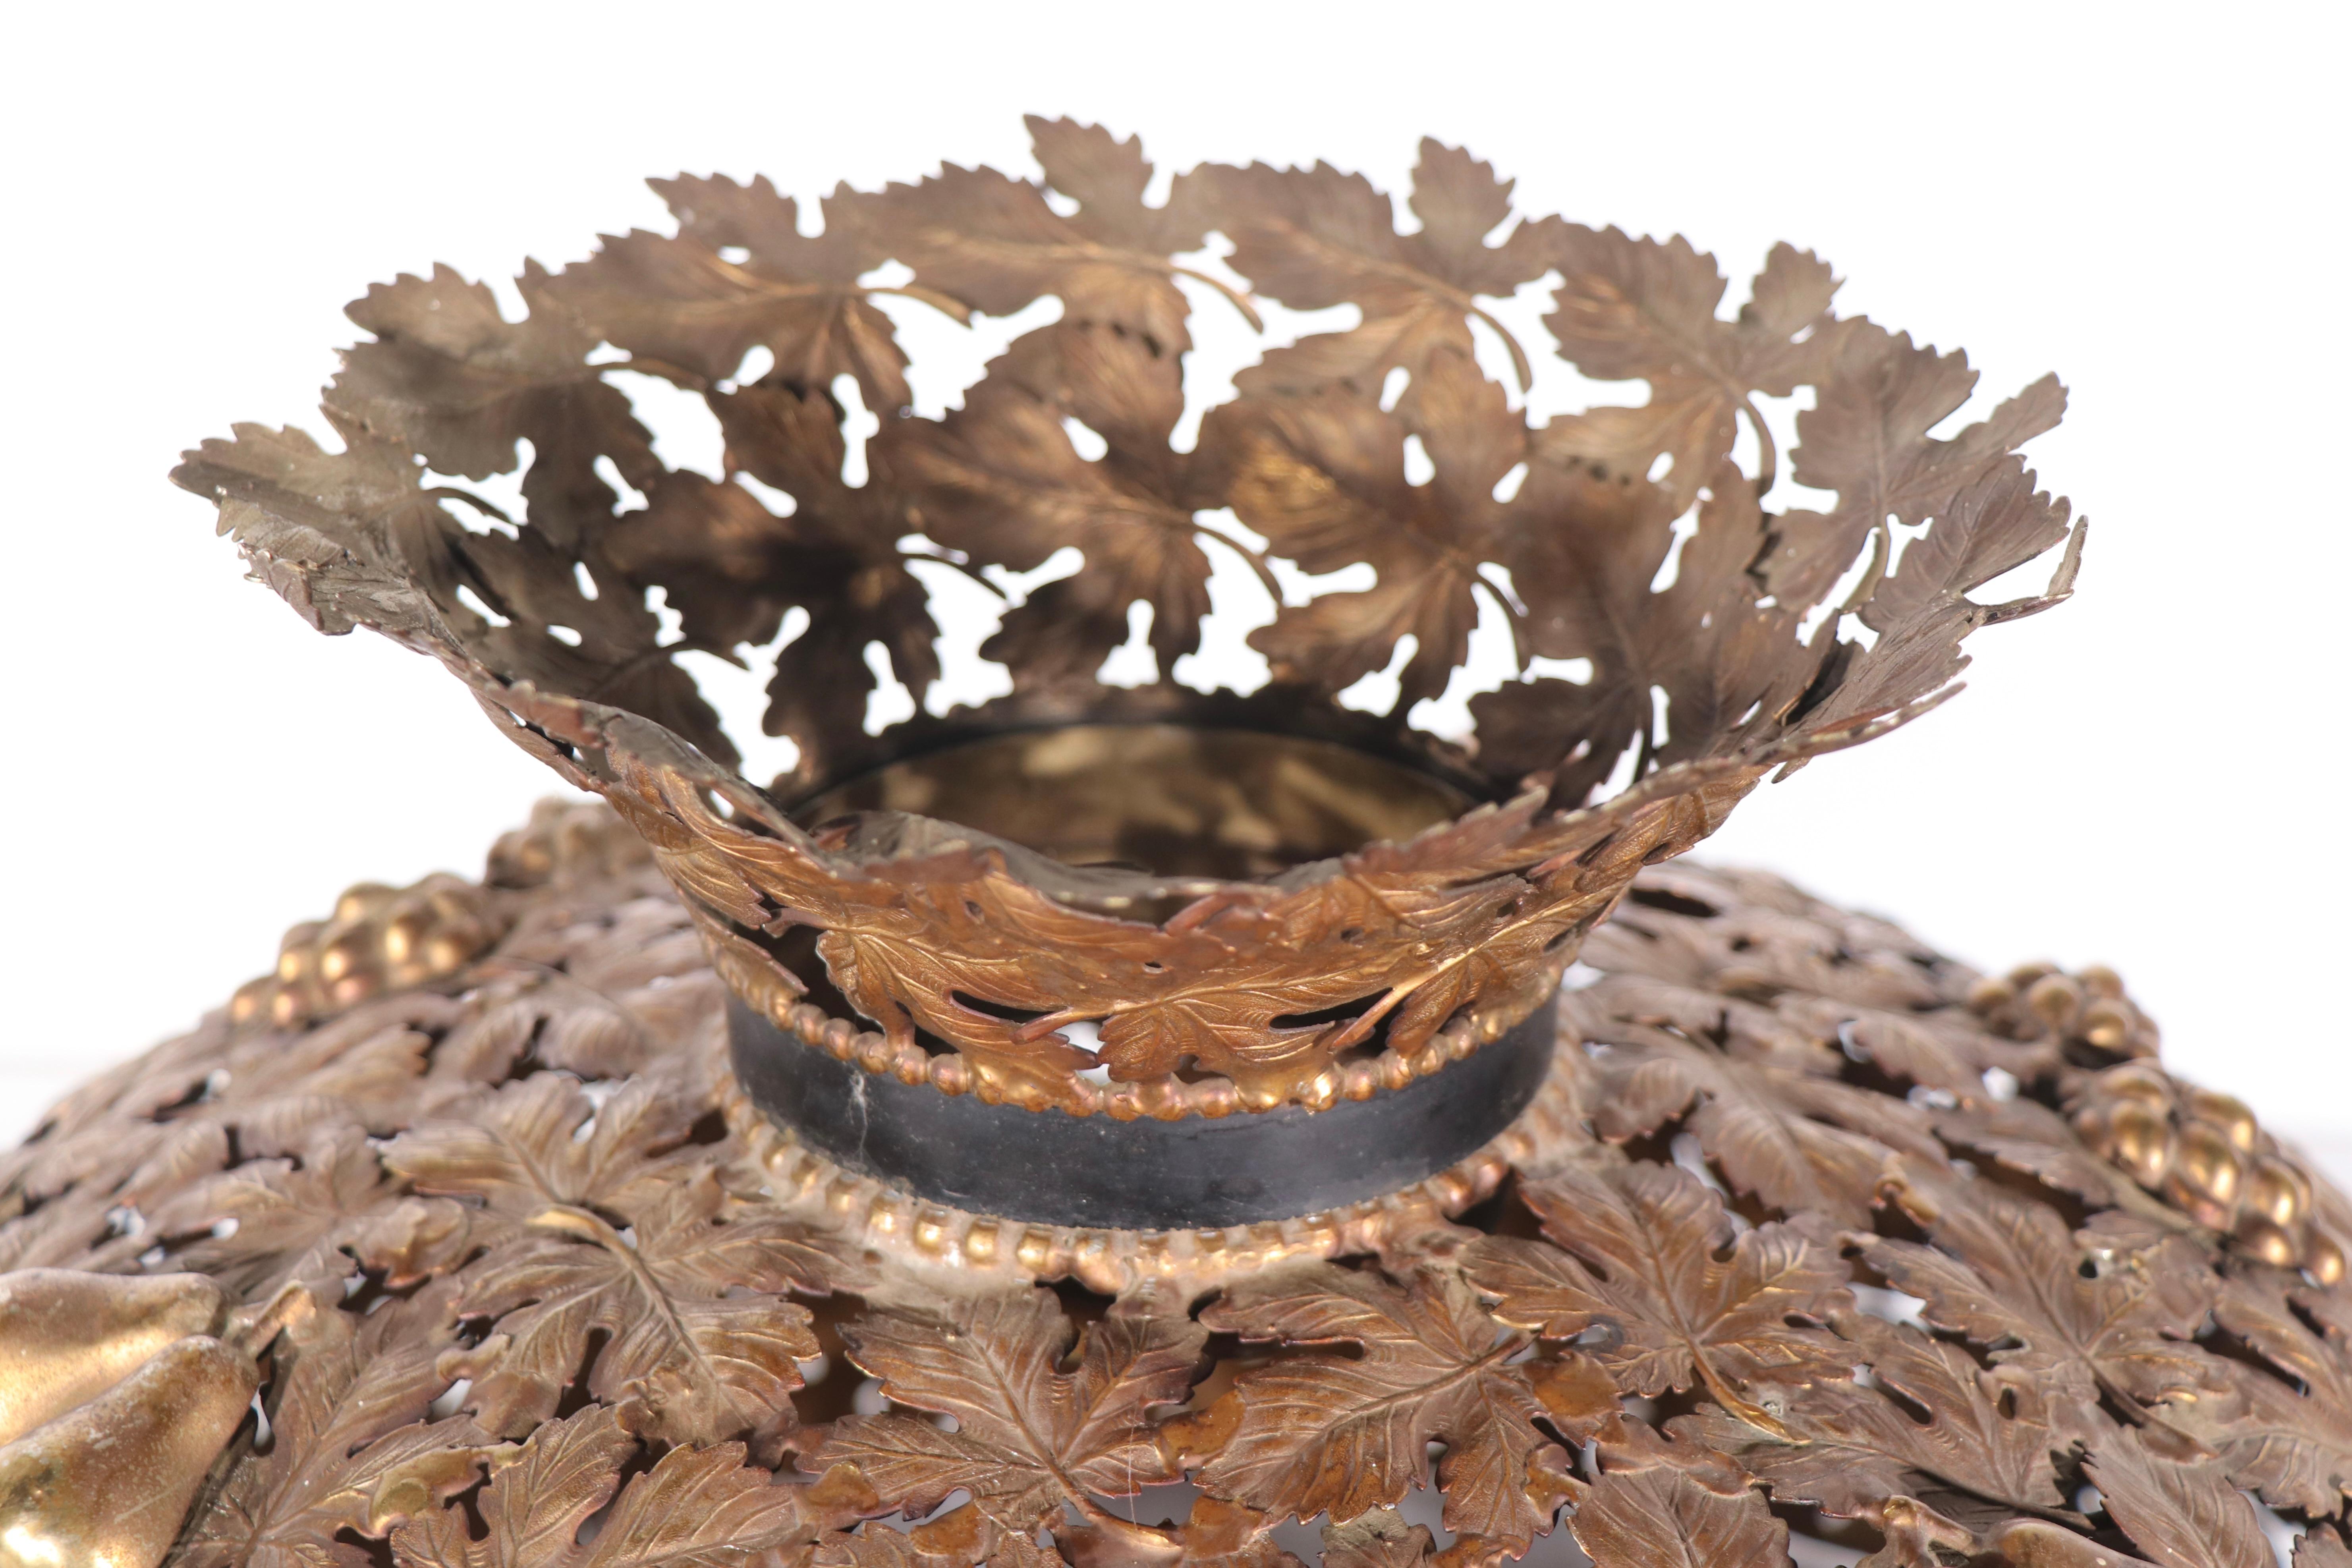 Abat-jour de lampe en laiton orné de feuilles finement moulées,  les baies et les poires. Le fond en forme de dôme est surmonté d'une couronne en forme de trompette. L'abat-jour peut être utilisé sur une lampe de table ou suspendu et utilisé comme